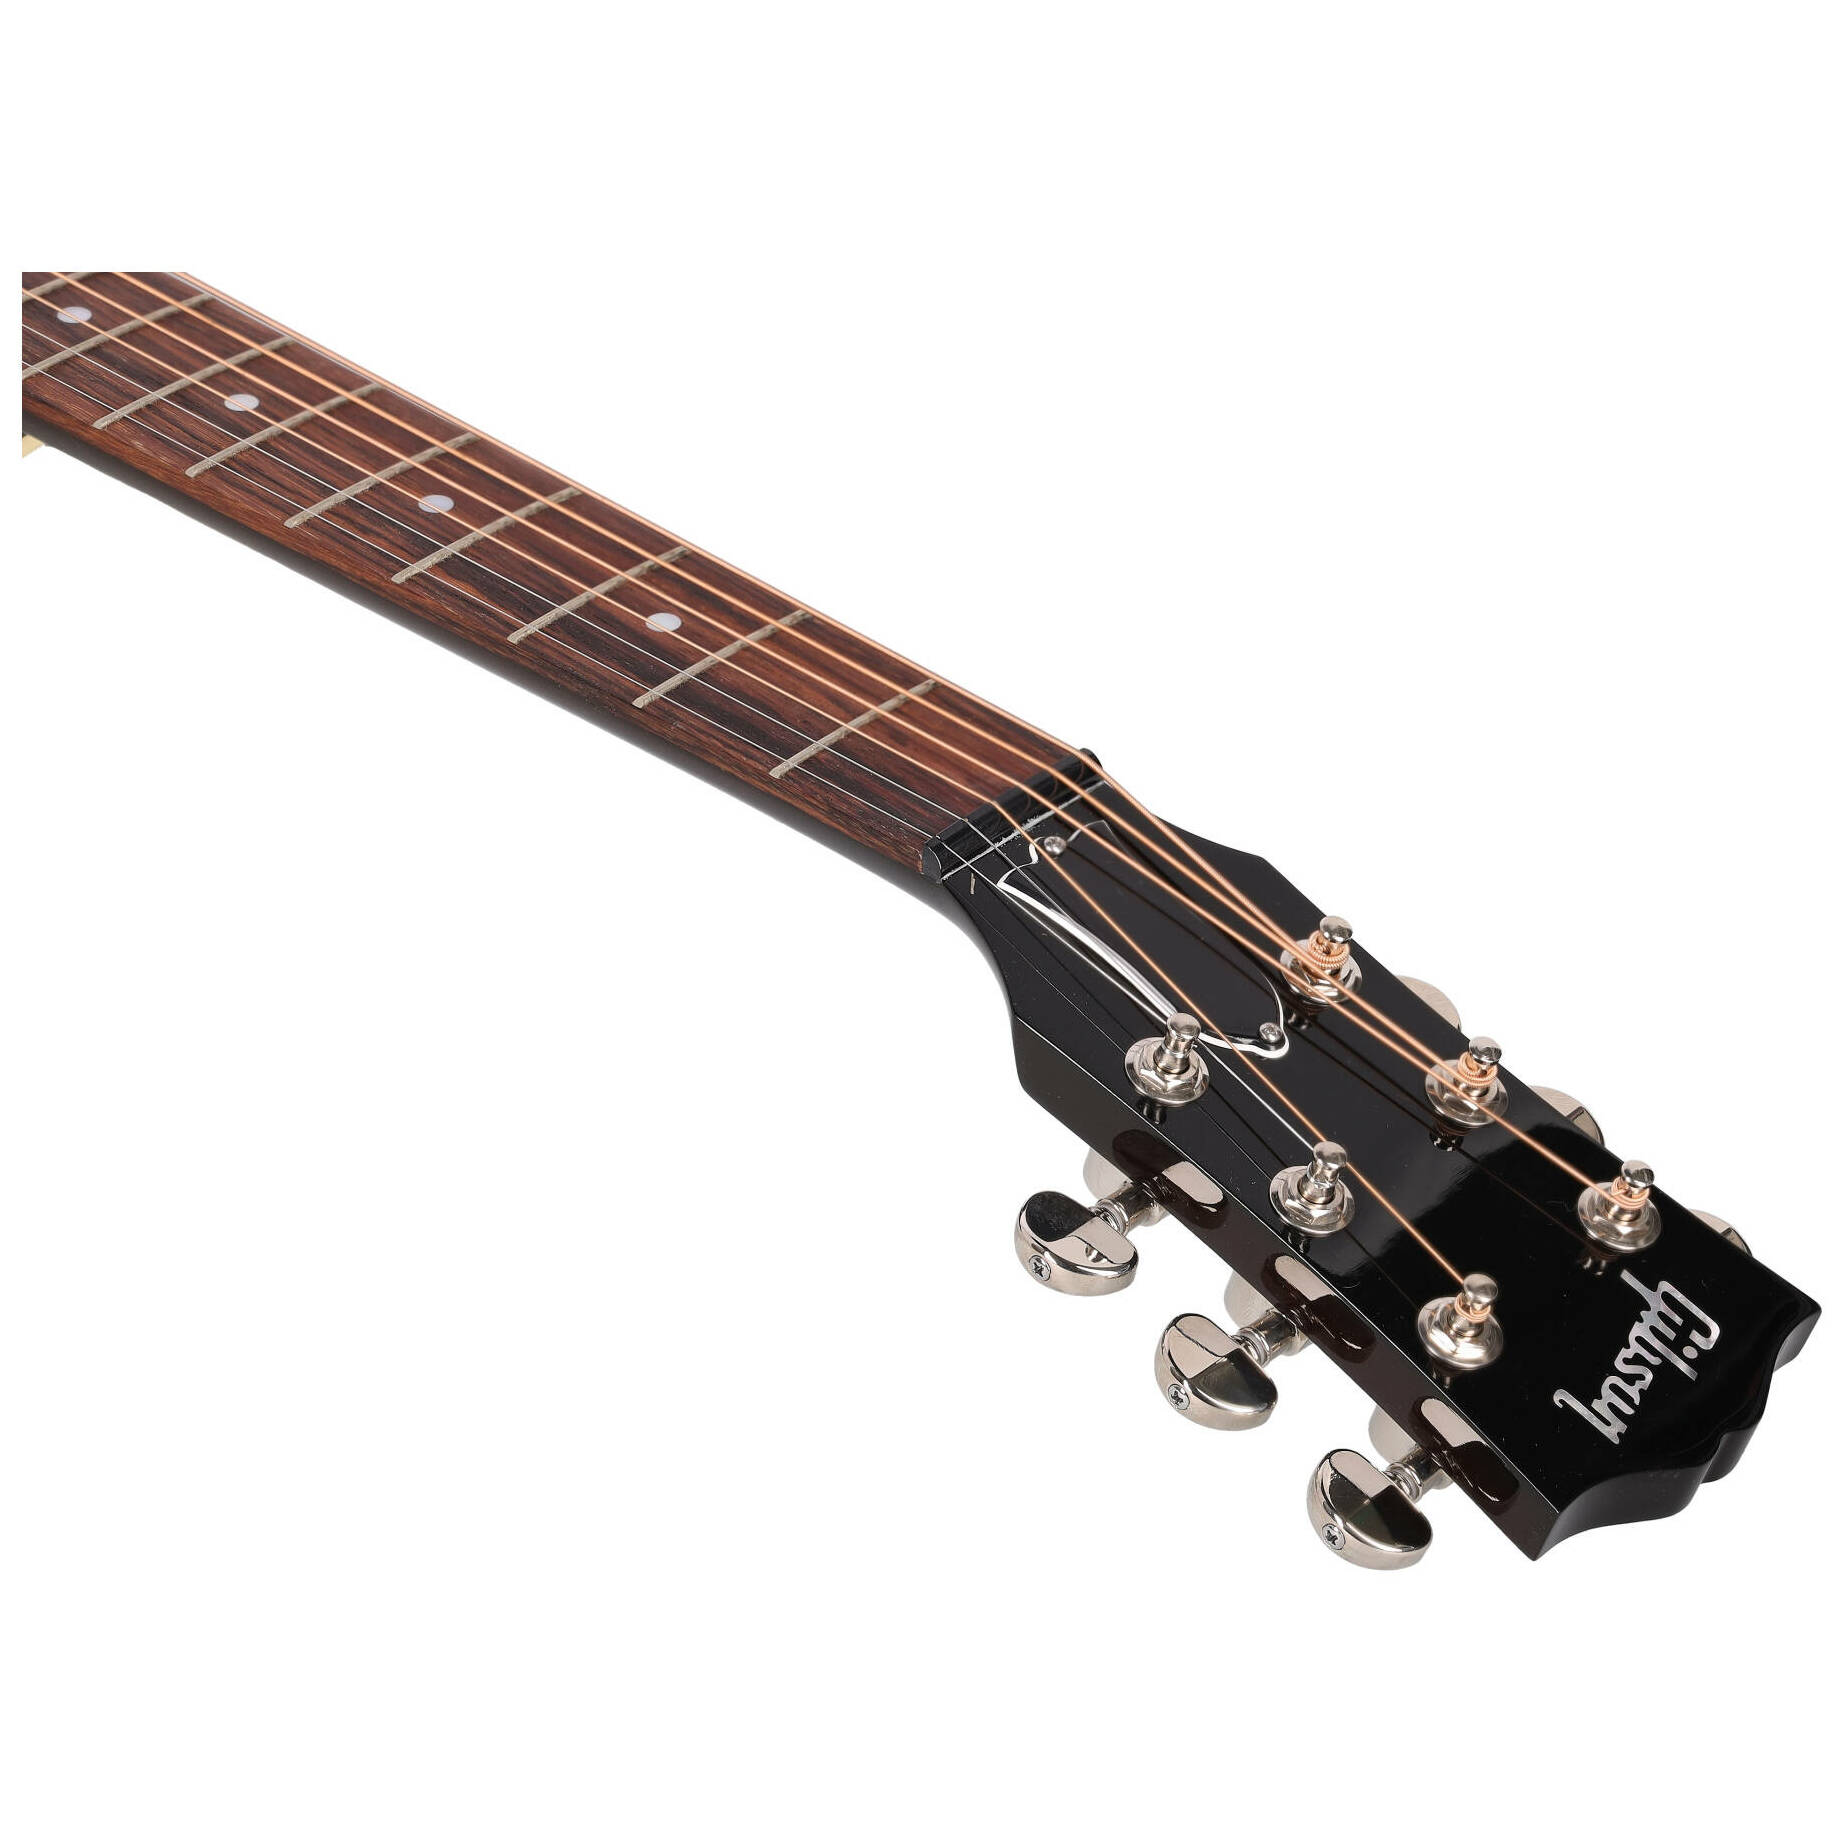 Gibson J-45 Standard VS 12